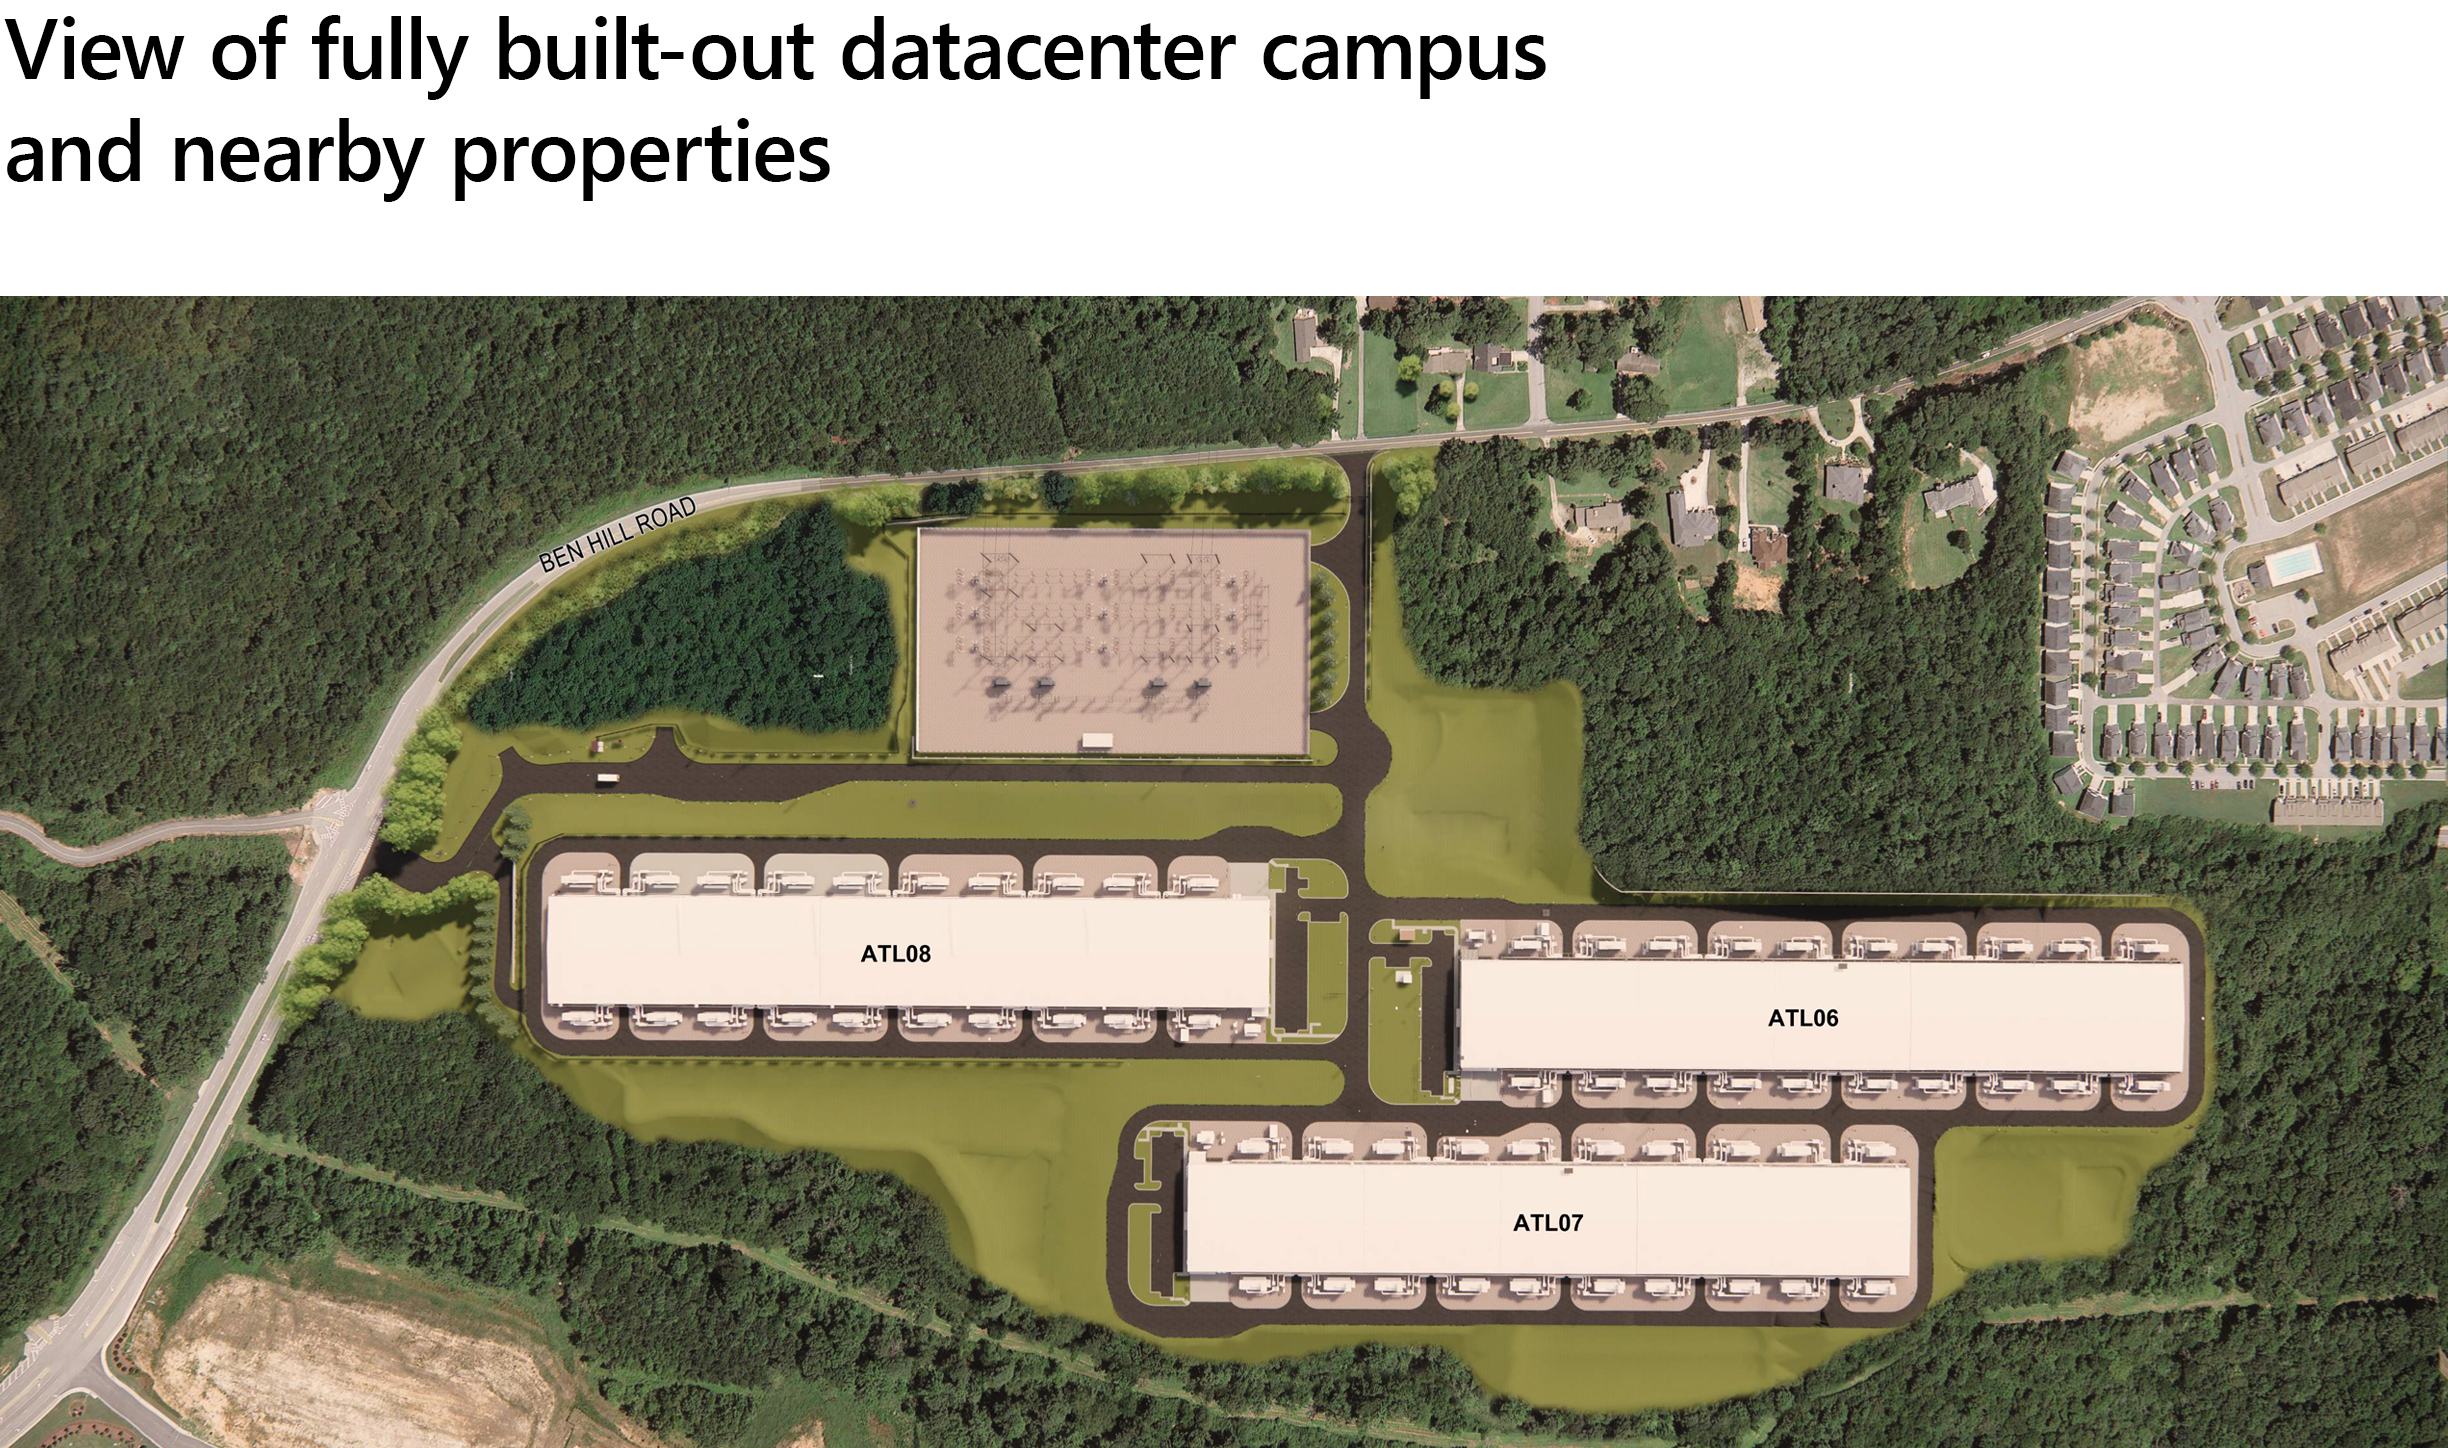 Tampilan kampus pusat data yang dibangun sepenuhnya dan properti terdekat